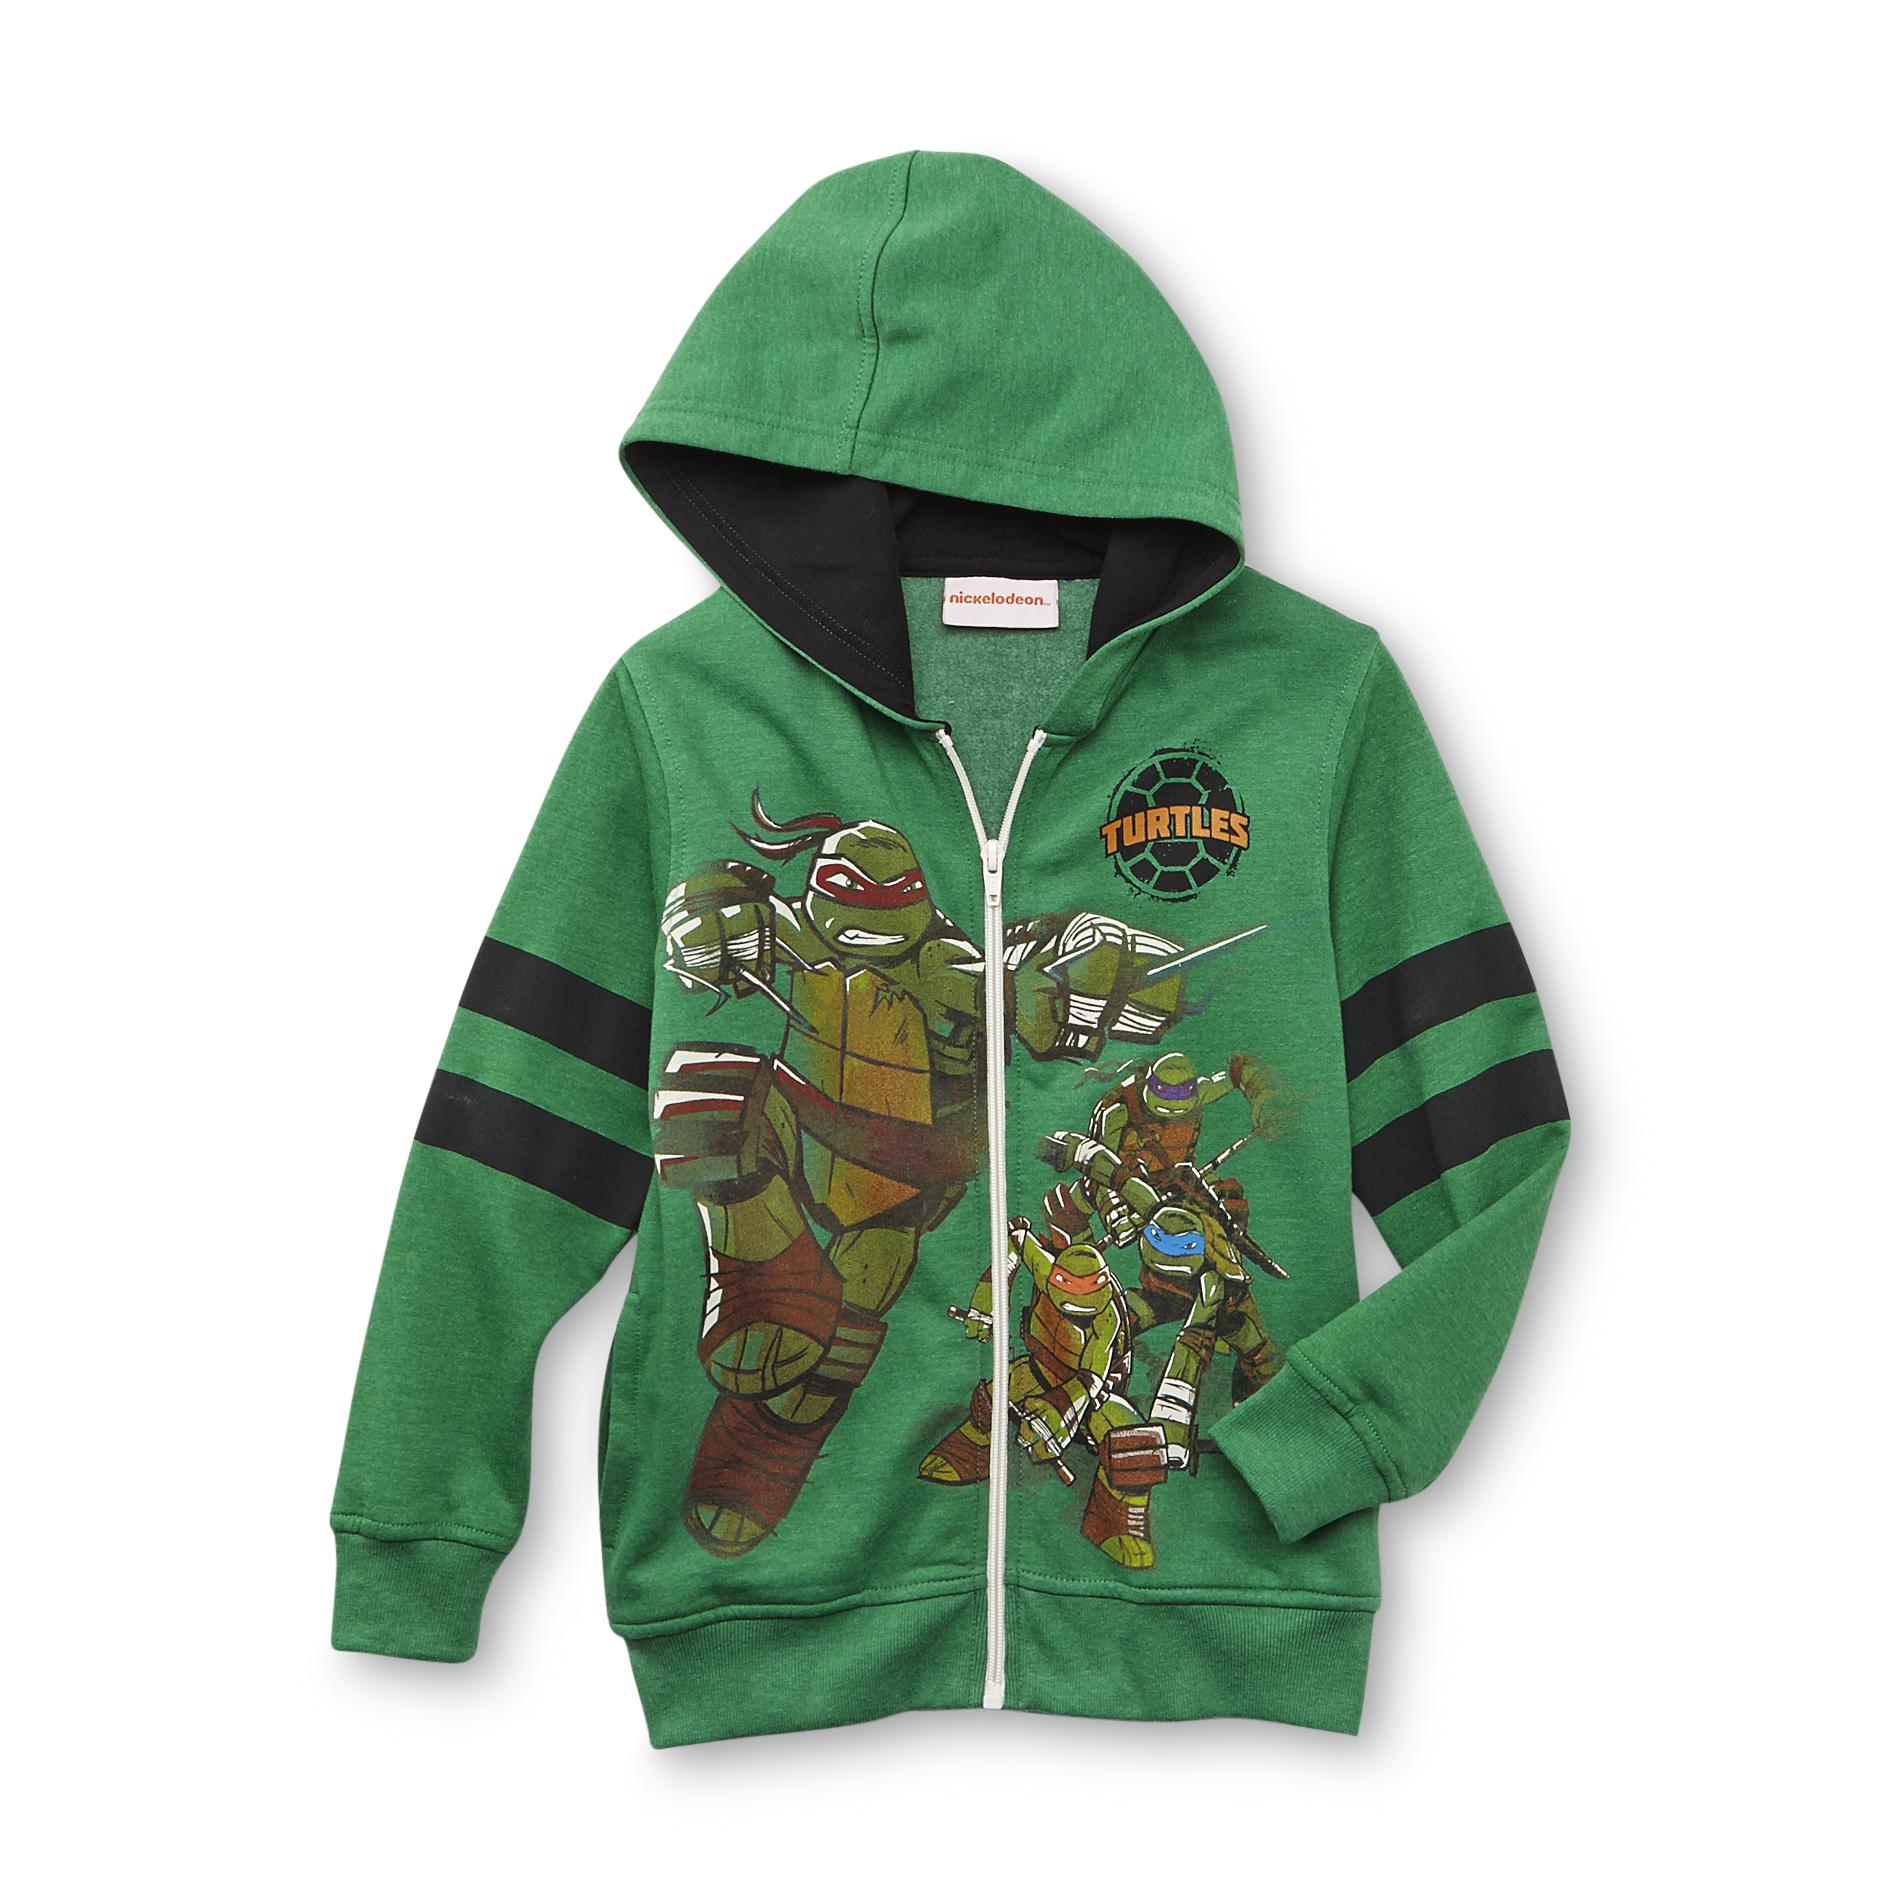 Nickelodeon Teenage Mutant Ninja Turtles Boy's Hoodie Jacket - Heathered